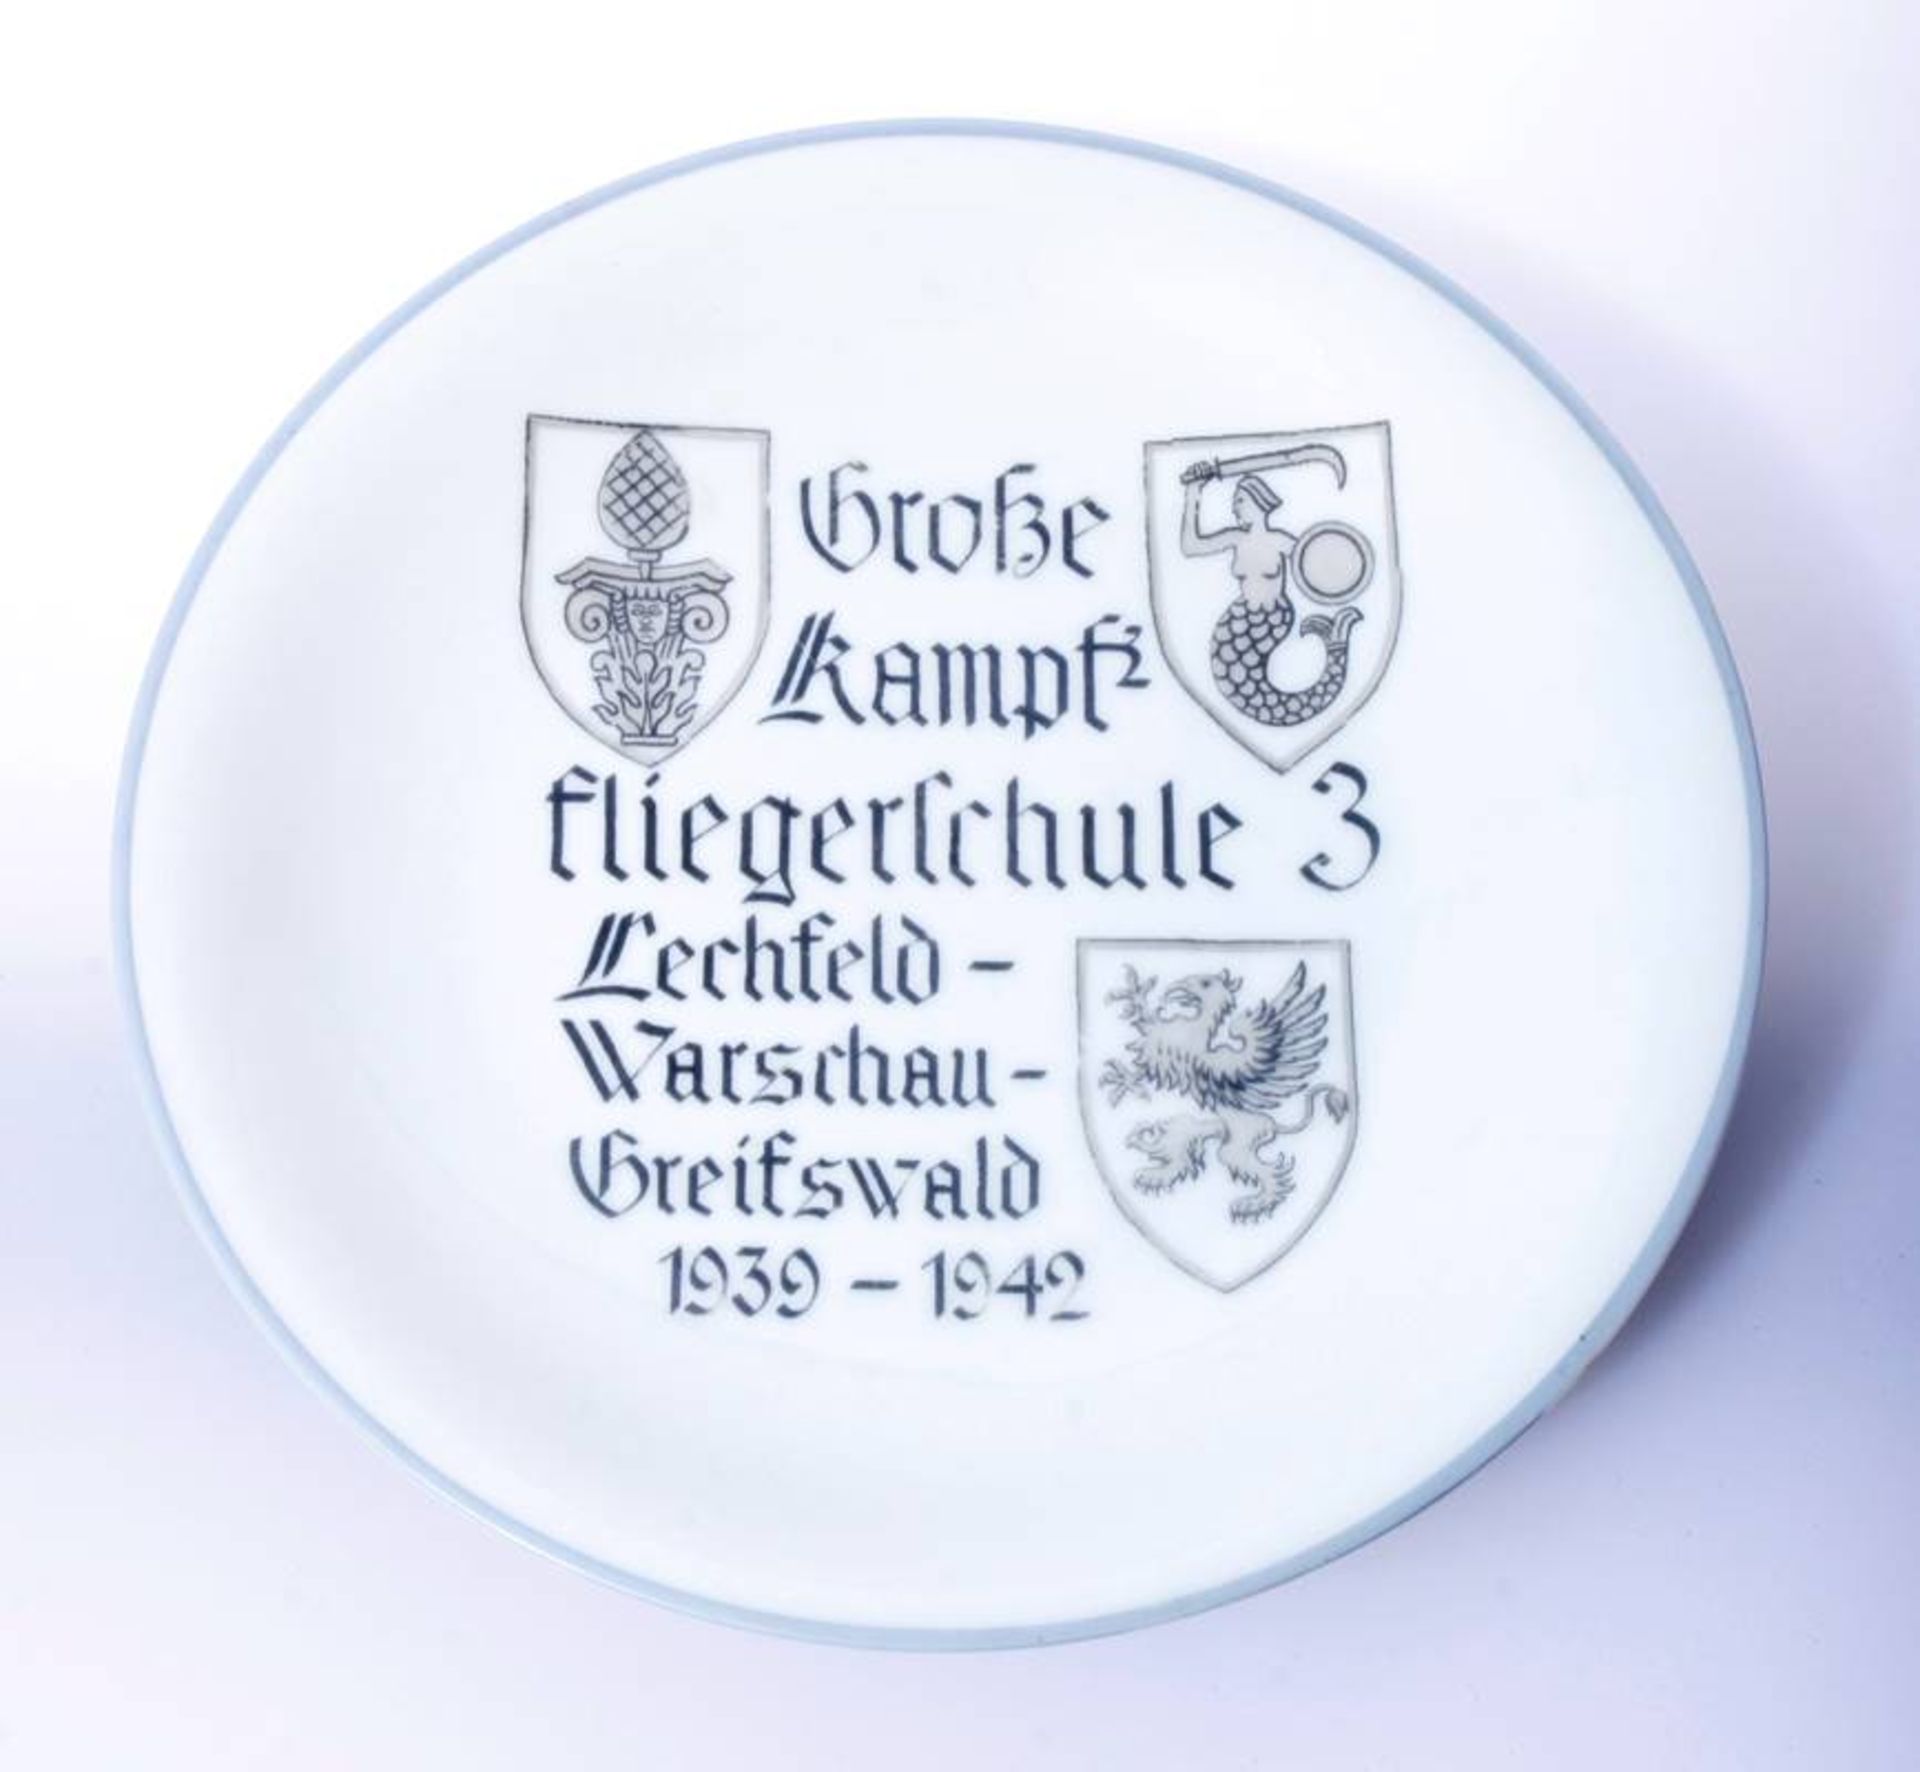 Erinnerungsteller Große Kampffliegerschule 31939-1942Lechfeld-Warschau-GreifswaldHersteller